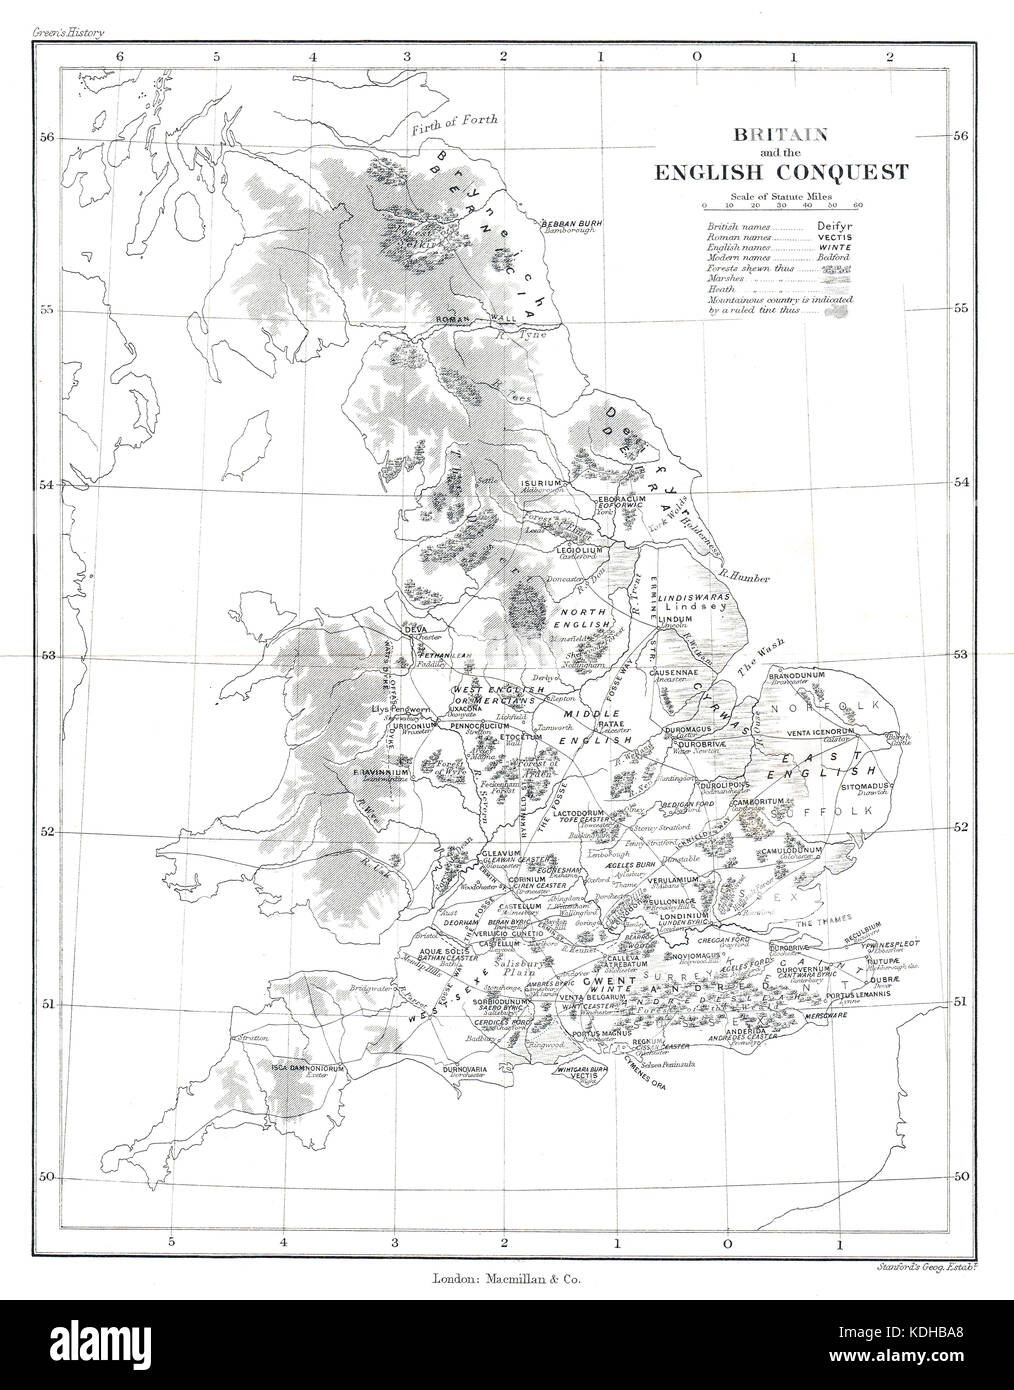 Mappa della Gran Bretagna e la conquista inglese. che mostra la modifica mappa del paese dopo la partenza dei romani & l invasione dagli angoli nel V secolo. Foto Stock